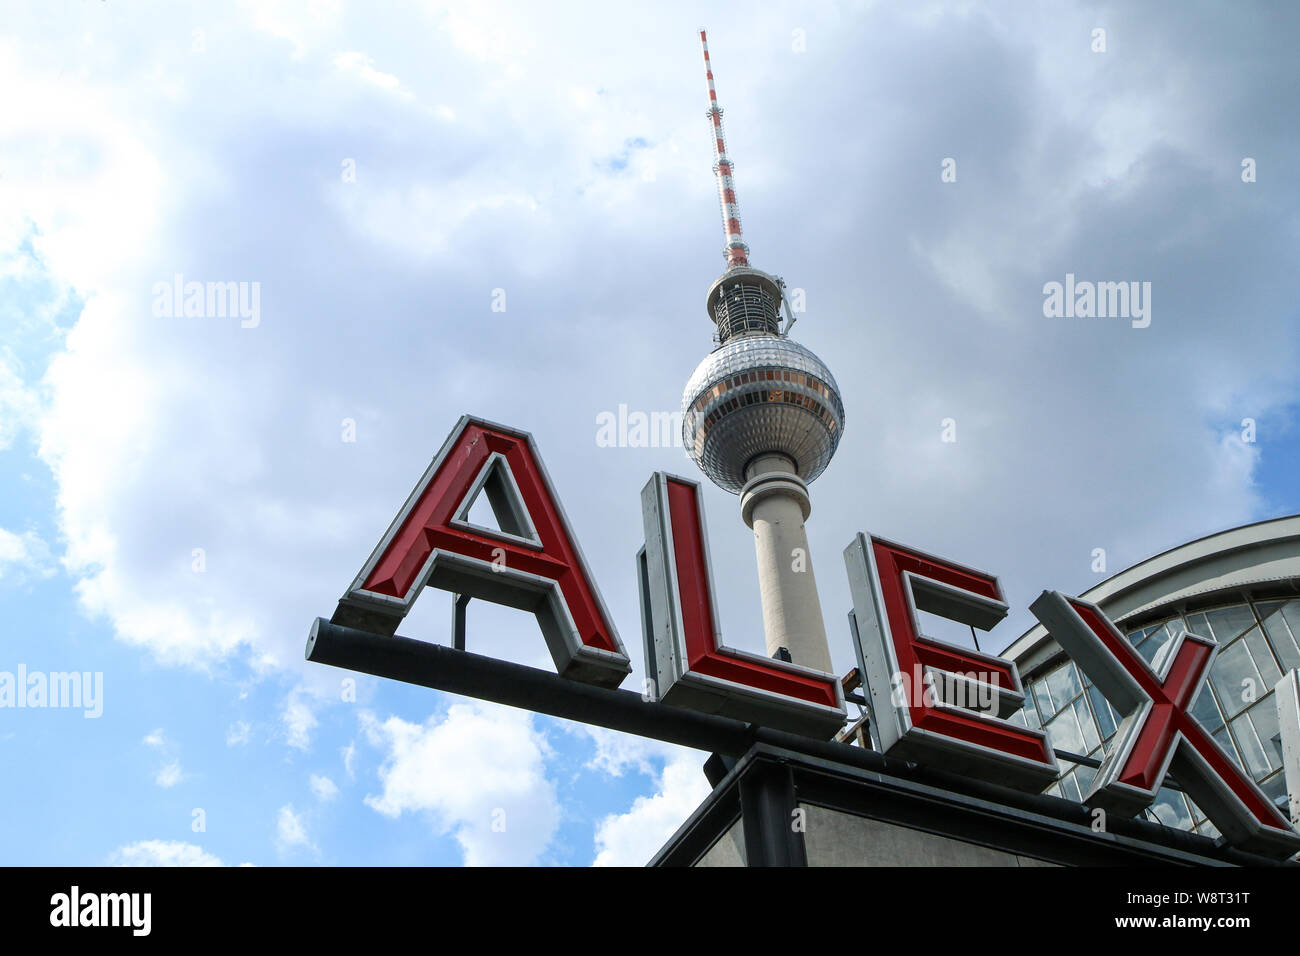 La tour de télévision de Berlin, l'un des symboles de la ville, avec une partie du signe sur la station de métro Alexanderplatz. Banque D'Images